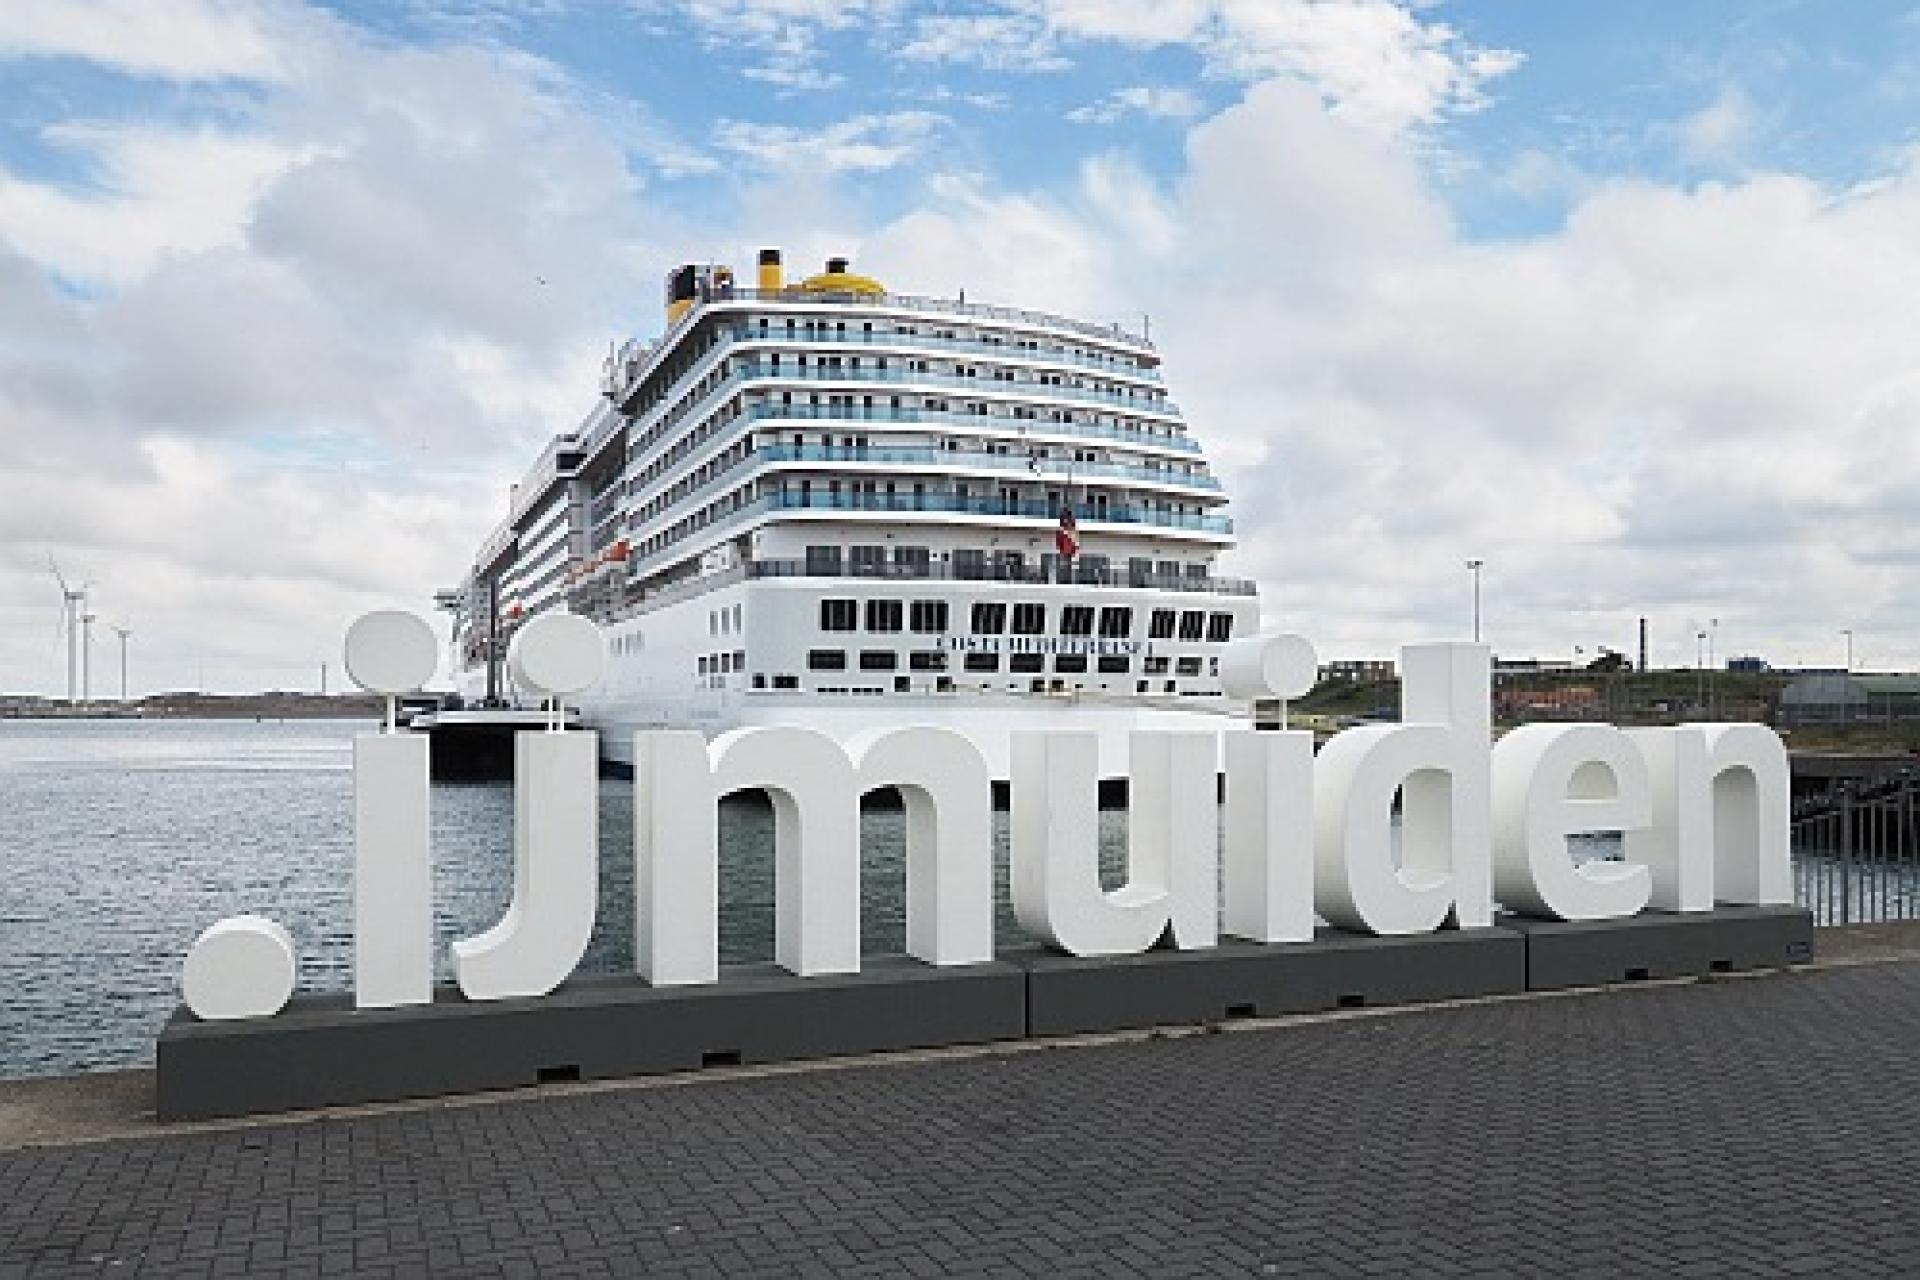 Foto haven IJmuiden met de Citymarketing letters .ijmuiden en een cruiseschip op de achtergrond